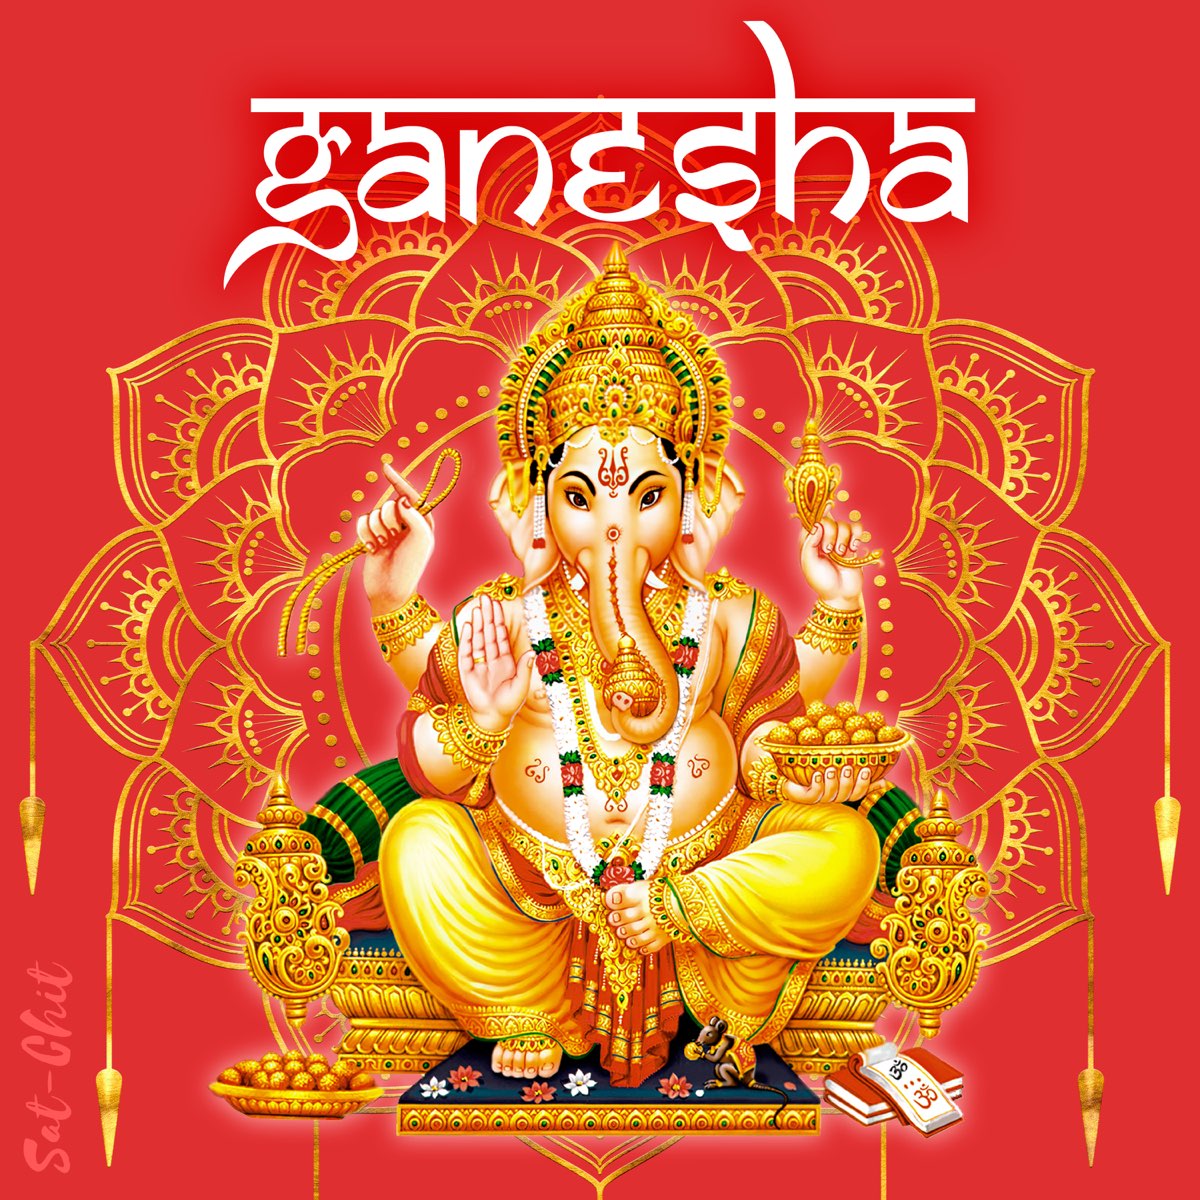 Ganesha by Sat-Chit.